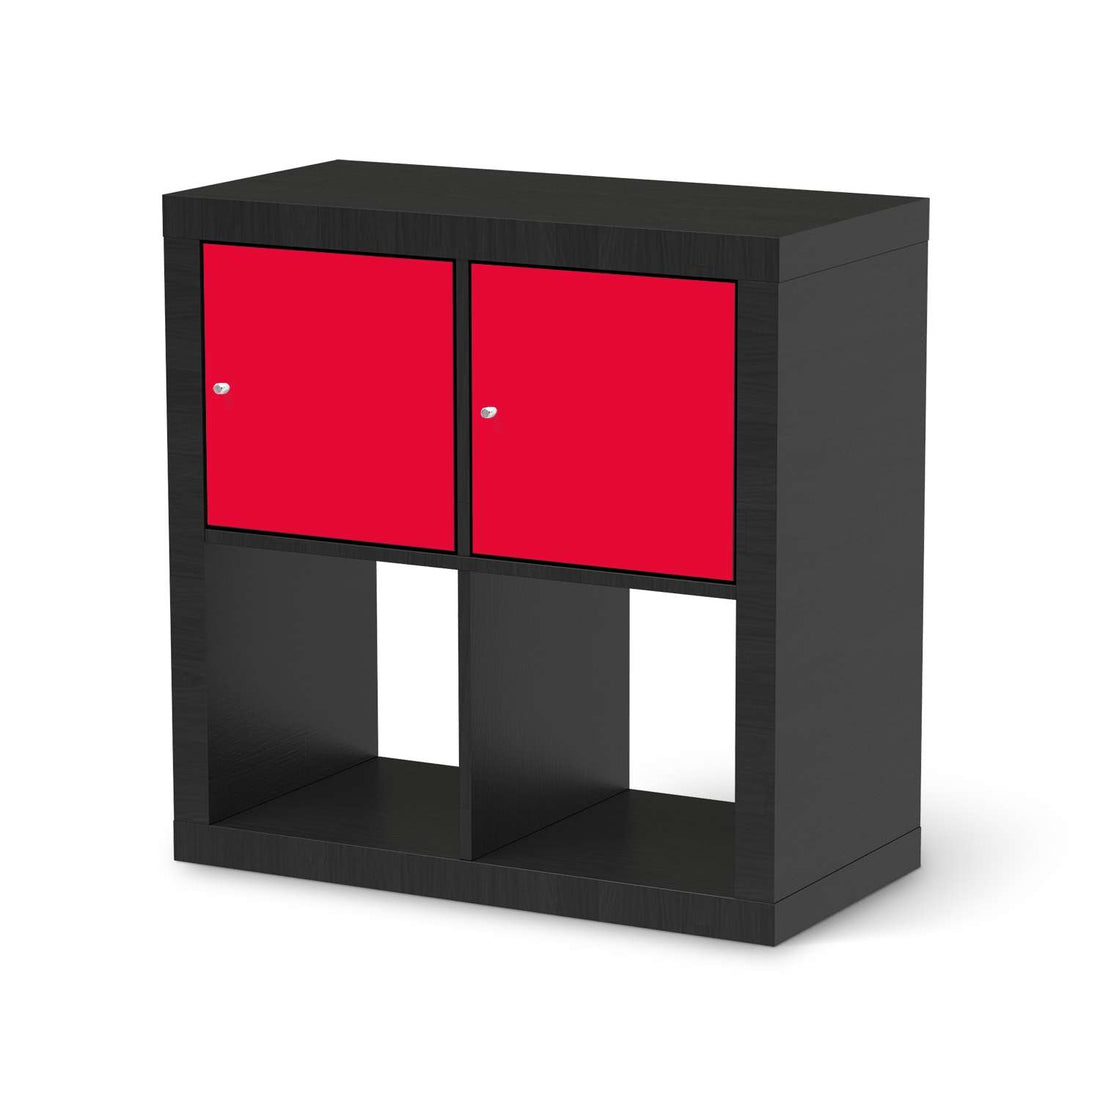 Möbel Klebefolie Rot Light - IKEA Expedit Regal 2 Türen Quer - schwarz